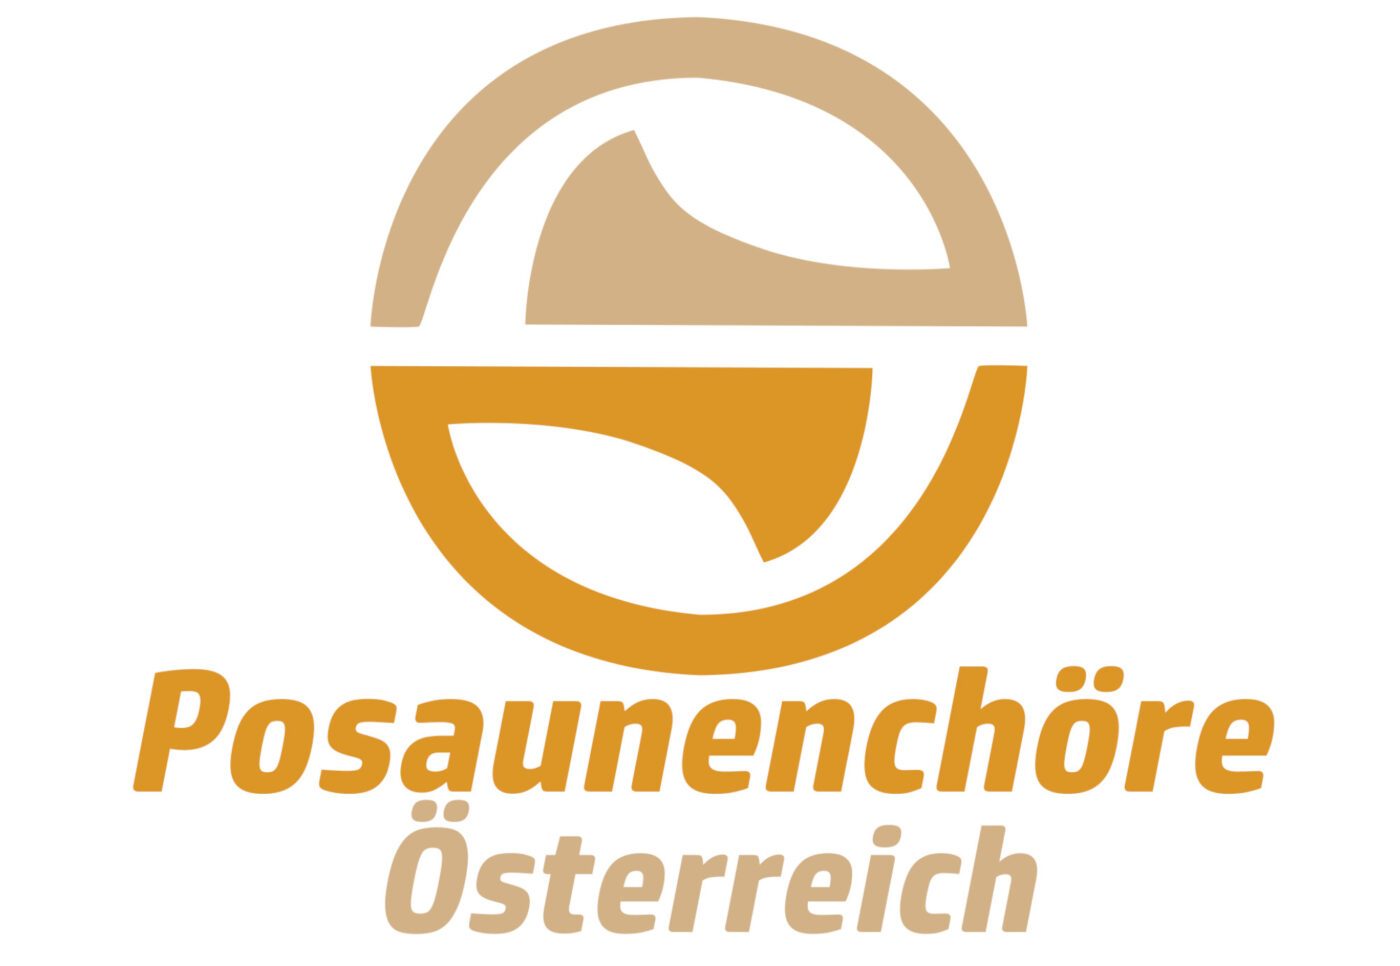 Bläserinnen und Bläser aus fünf Posaunenchören spielen im Gottesdienst am 19. März in Wien-Währing Werke von der Klassik bis zur Moderne. (Logo: Posaunenchor Rutzenmoos)